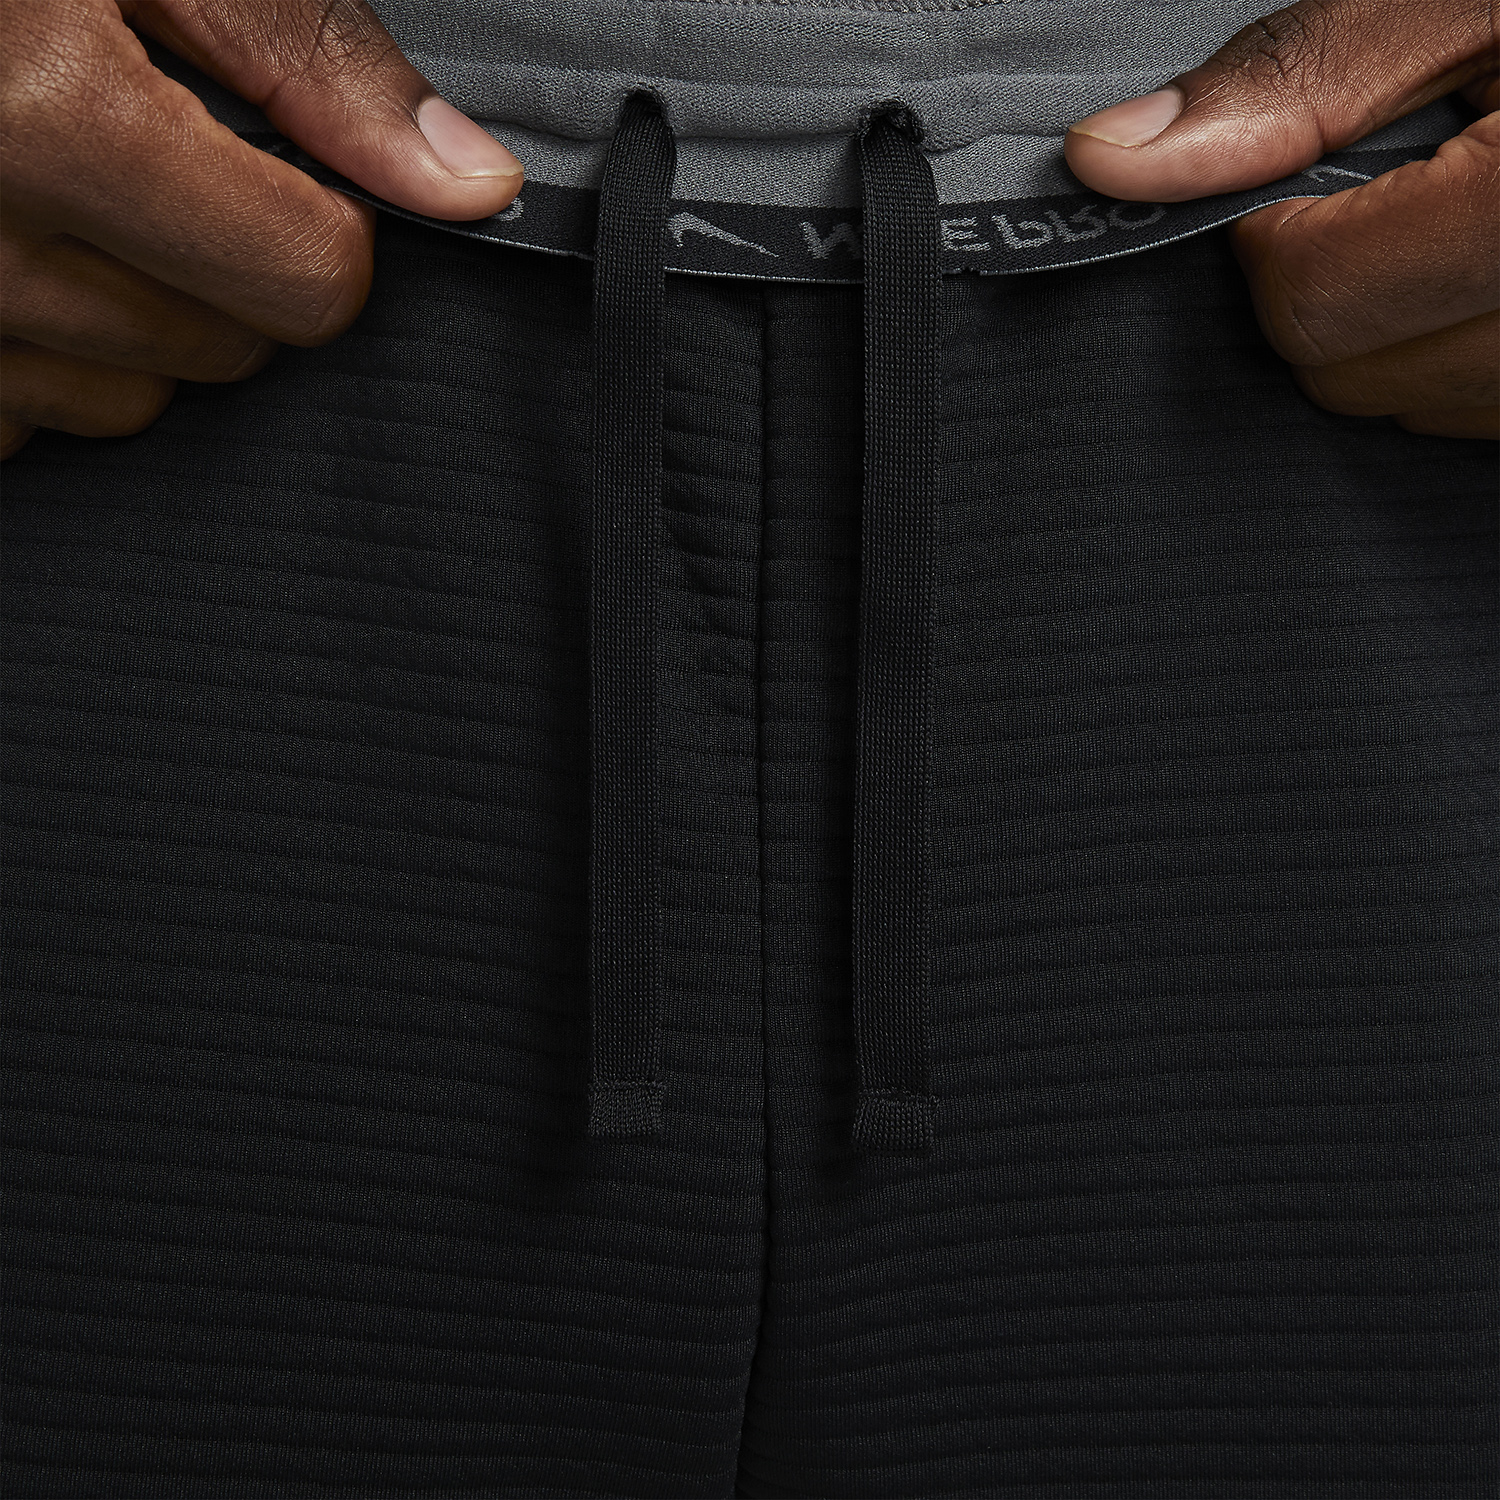 Nike Dri-FIT Pro Pantalones - Black/Iron Grey